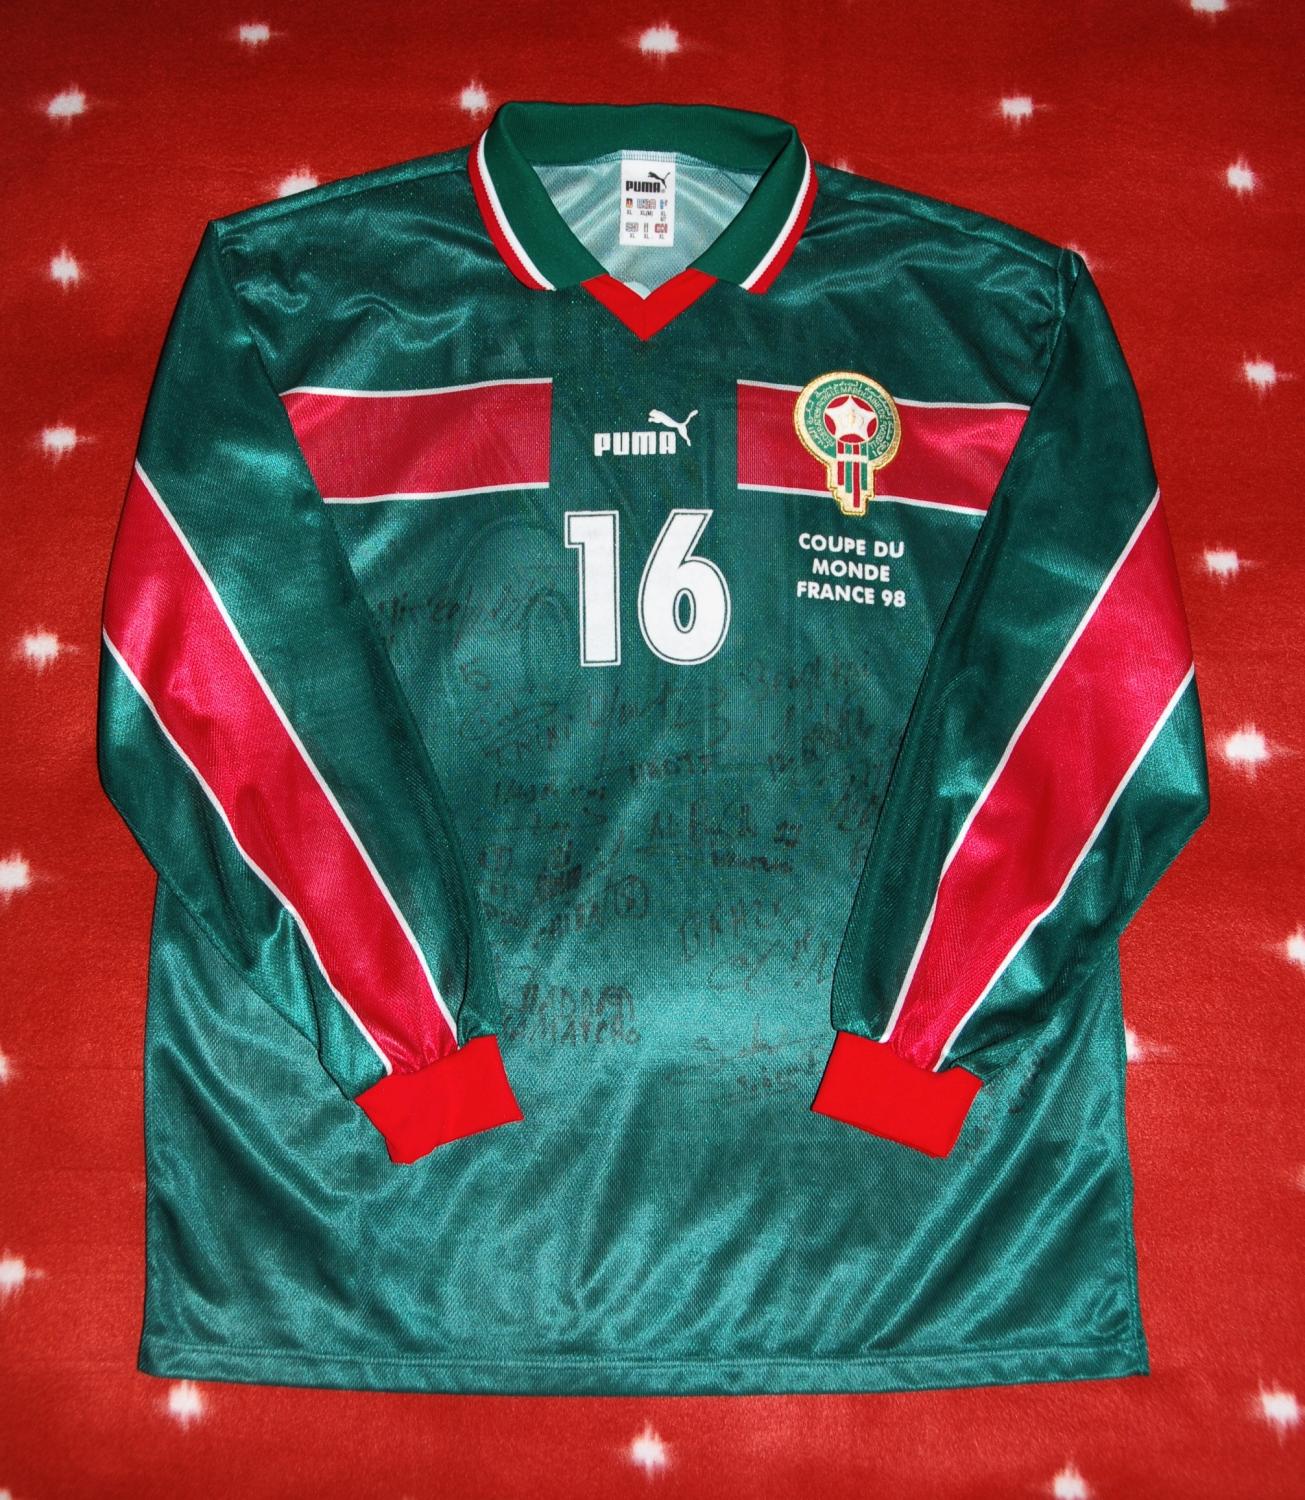 Morocco Home maglia di calcio 1998 - 2000.